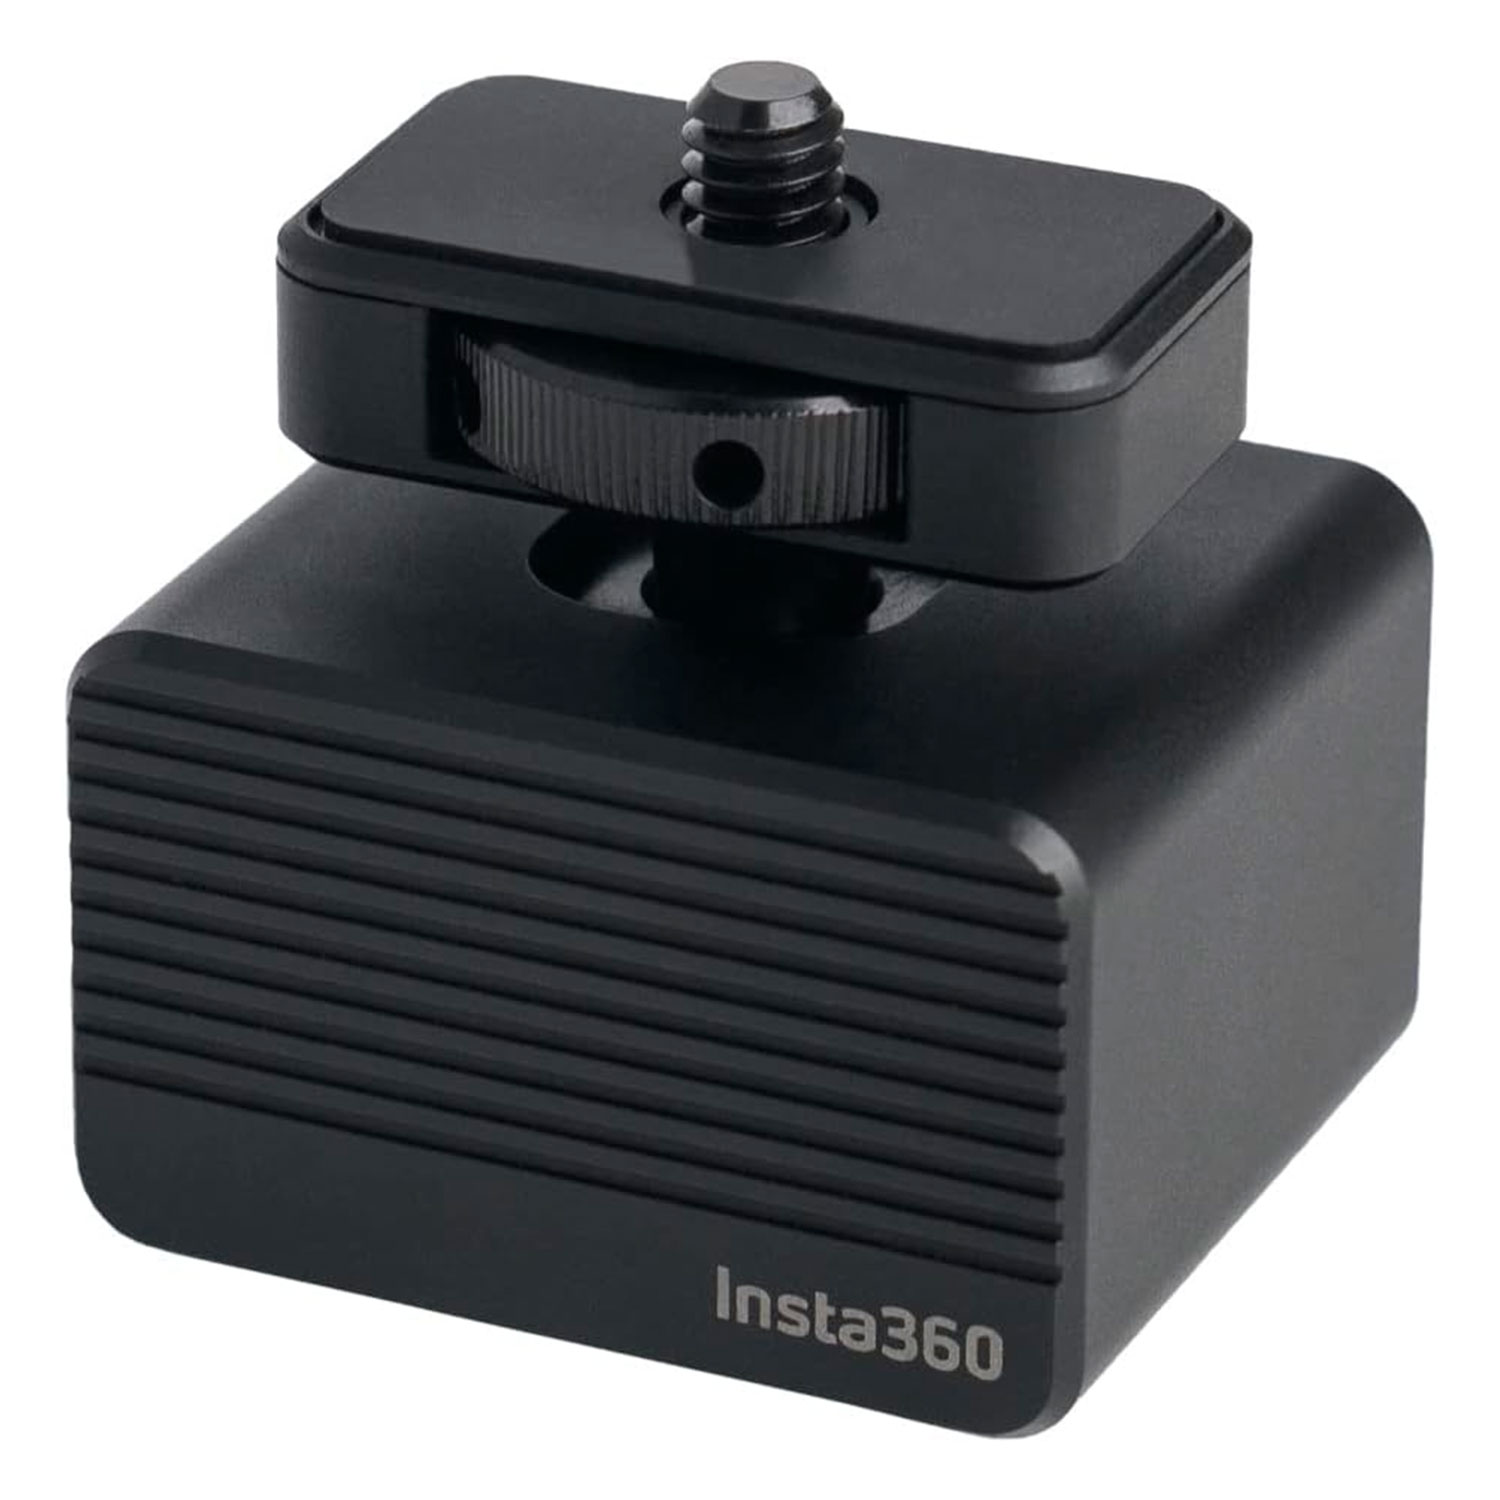 Amortecedor Vibração para Câmera Insta360 CINSTBA/A - Preto